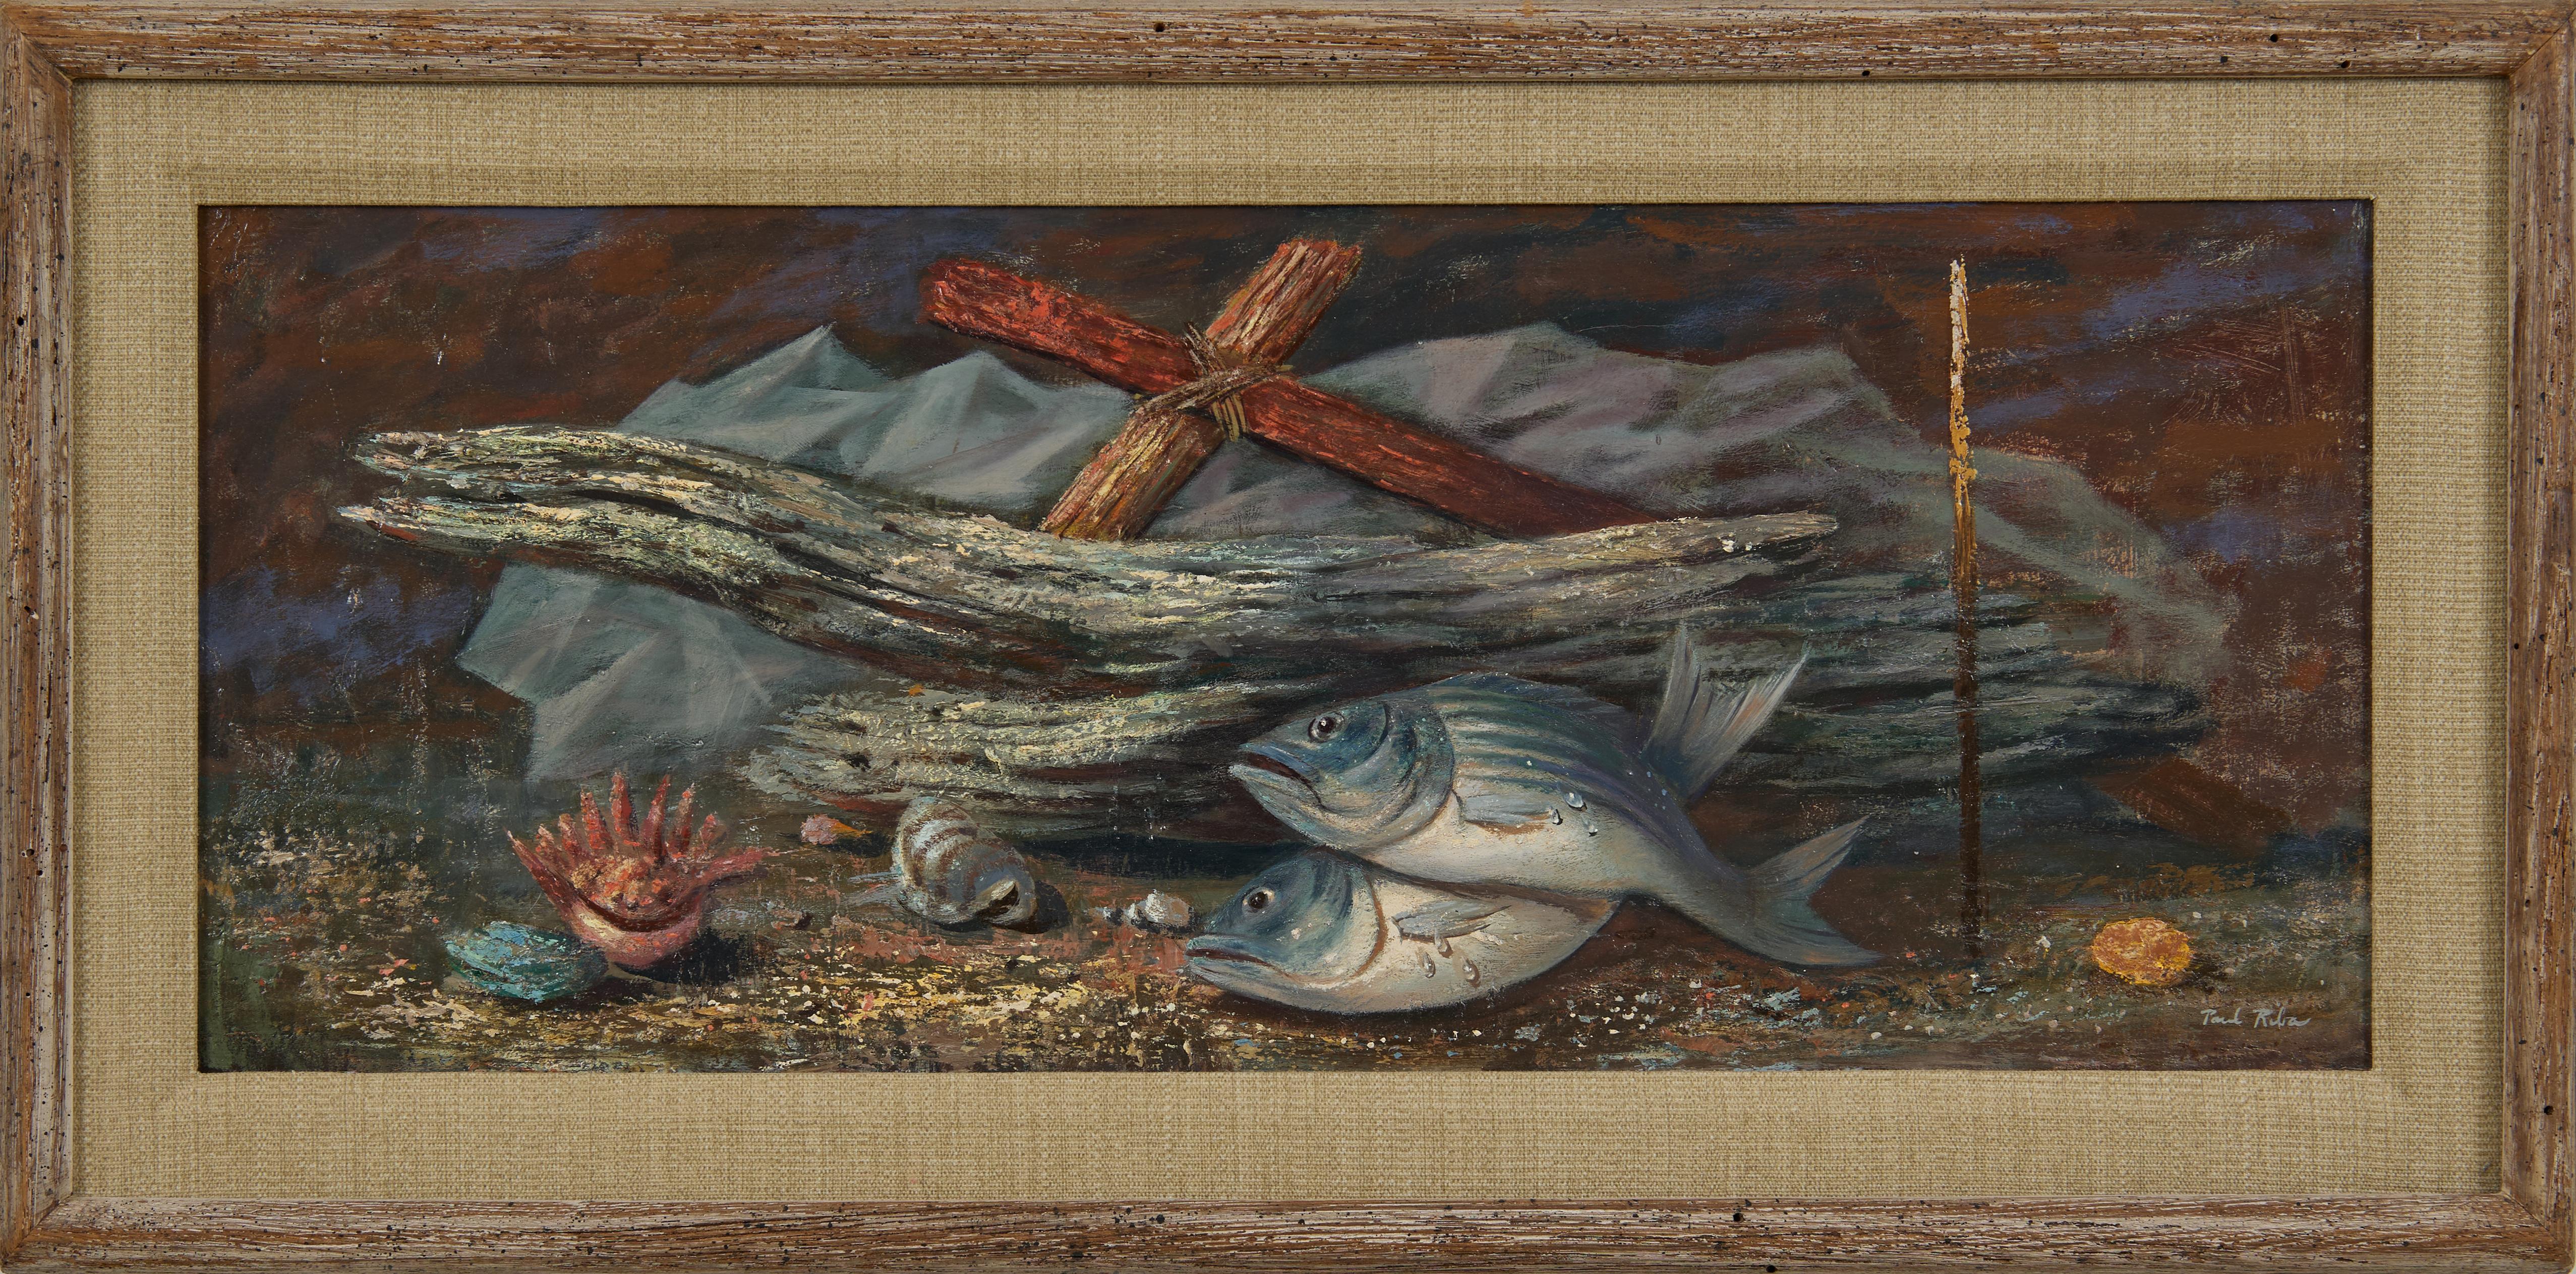 Driftwood & Fish, Magischer Realismus, Surrealistischer Künstler aus Cleveland, Mitte des 20. Jahrhunderts – Painting von Paul Riba